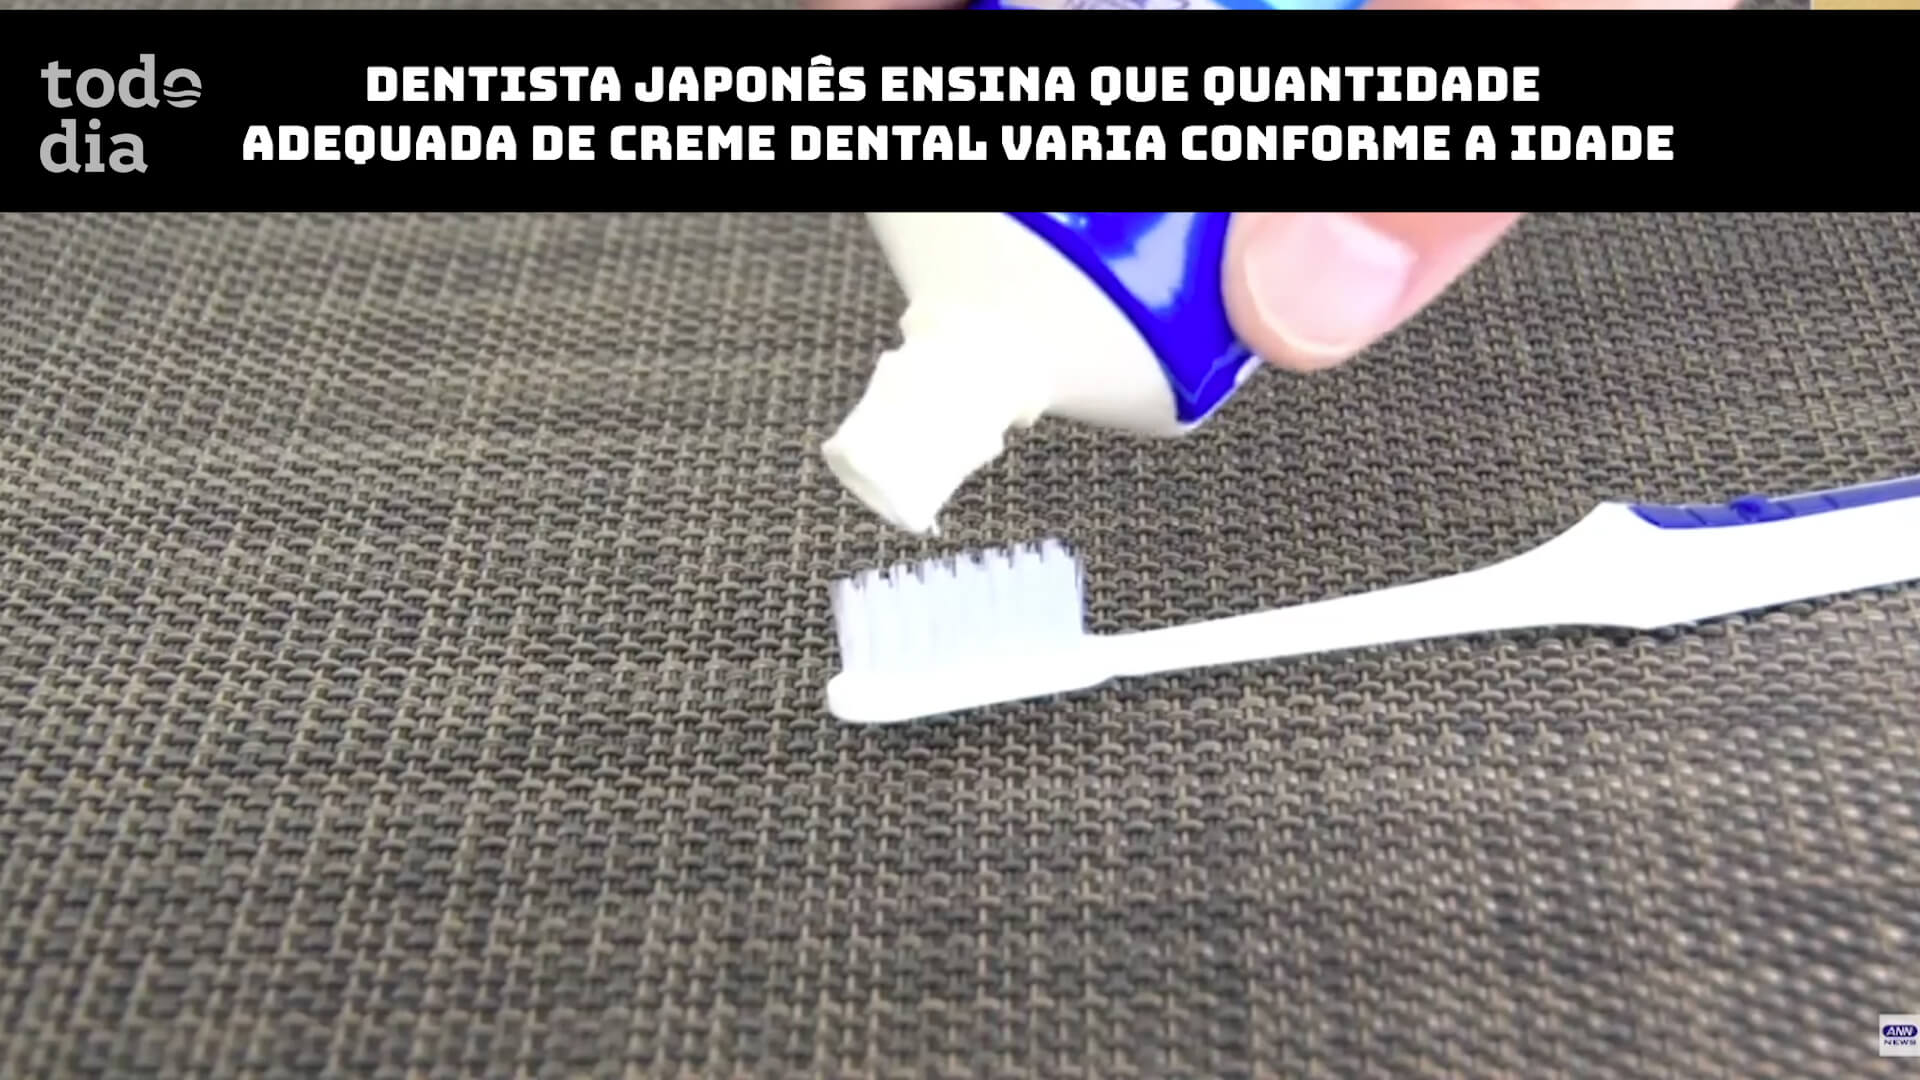 Dentista japonês ensina quantidade adequada de creme dental varia conforme a idade